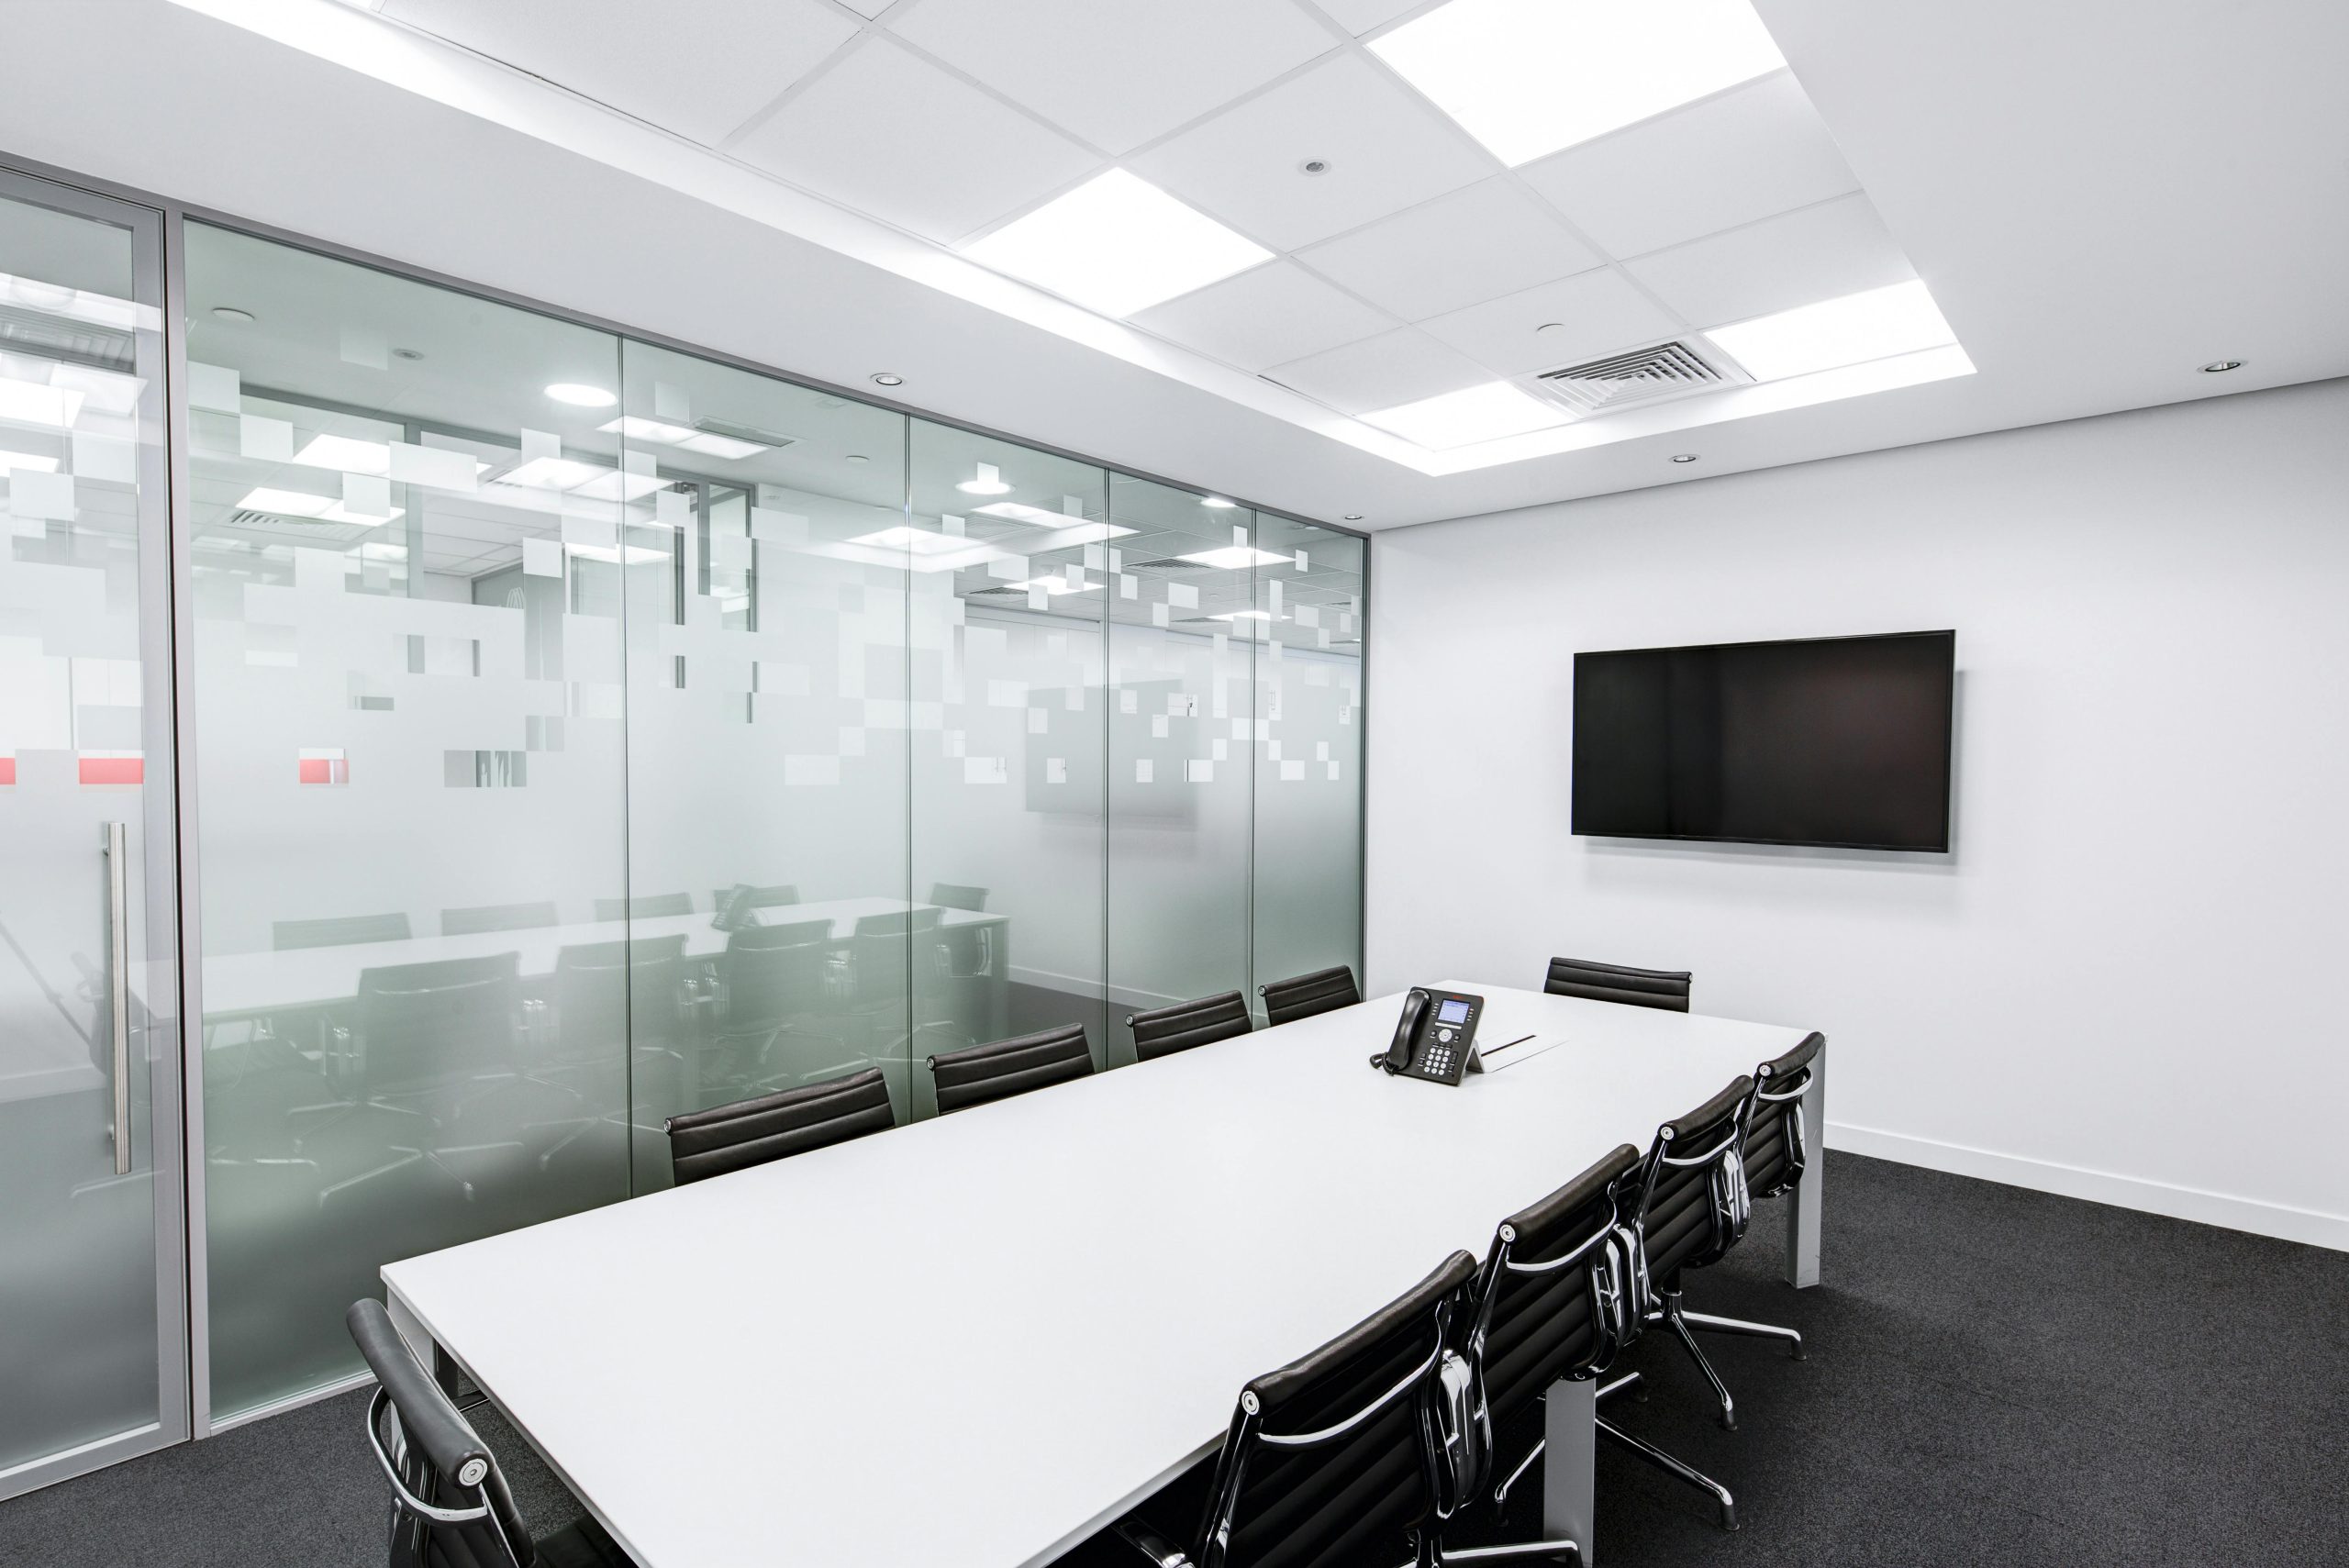 Reforma parcial de sala de reuniones con dotación tecnológica: una de las renovaciones de oficinas más común